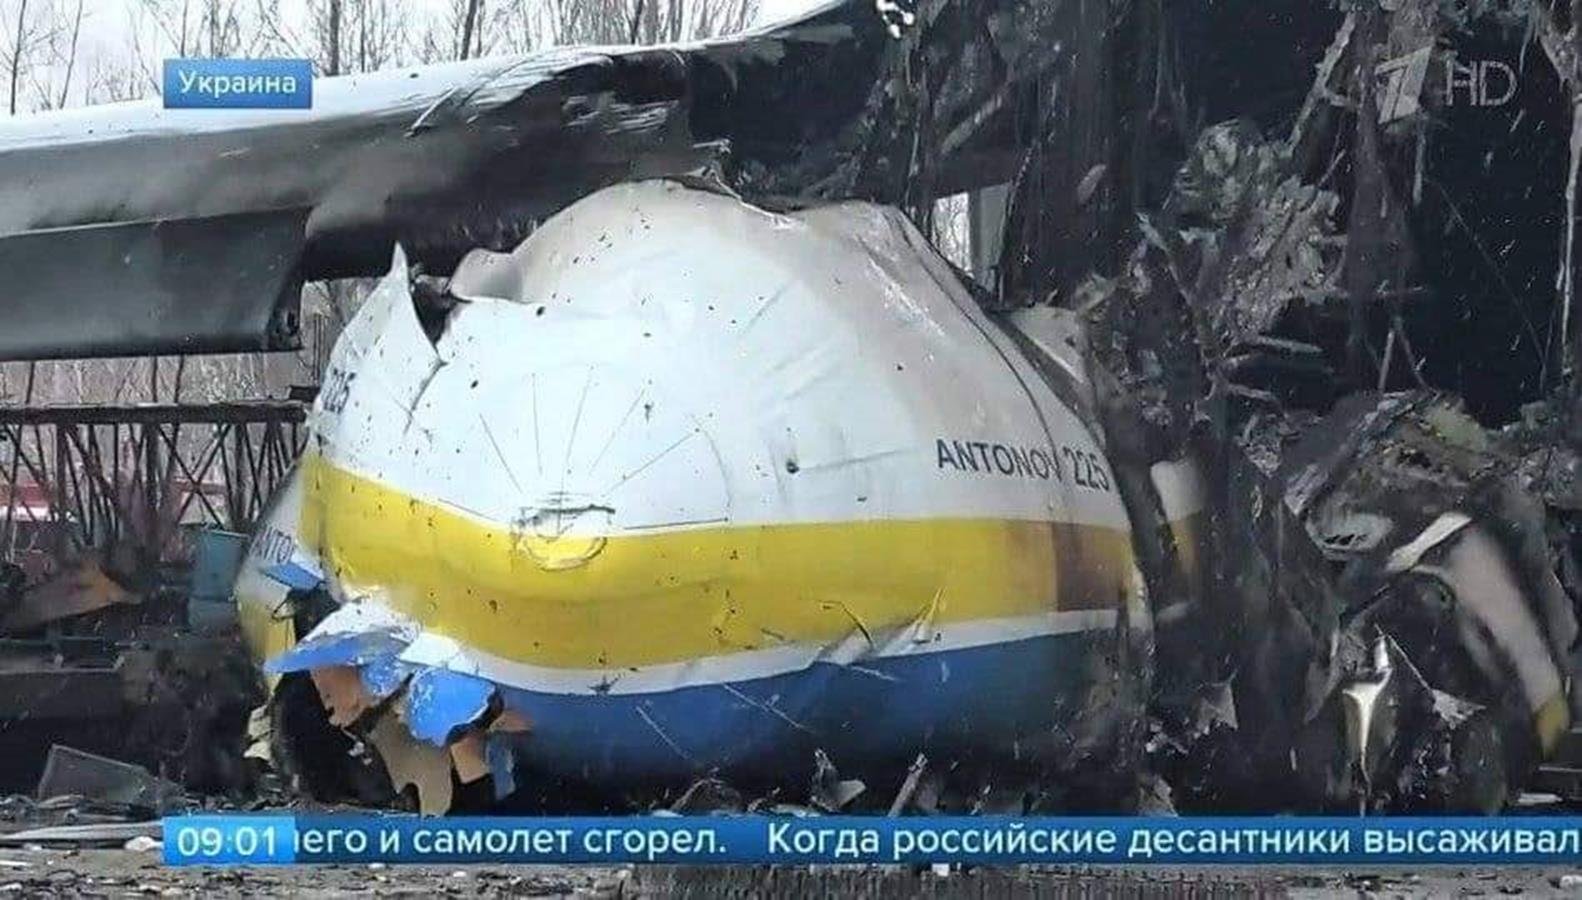 Zdjęcia potwierdzają - największy samolot świata zniszczony. Czym był An-225 Mrija i co z jego następcą